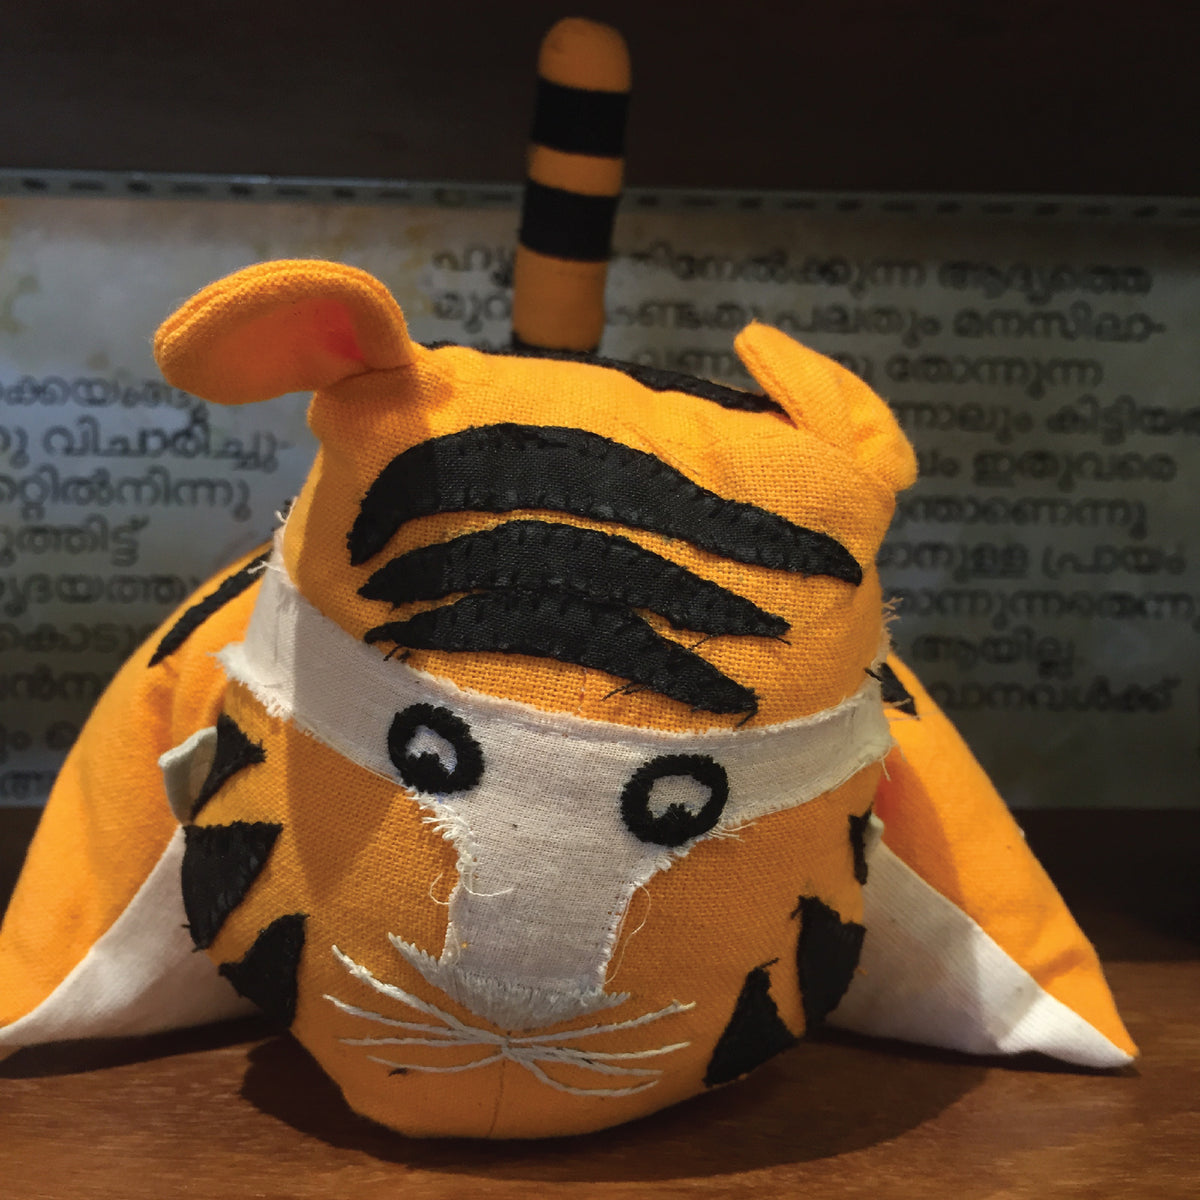 Pillow Tiger - Orange